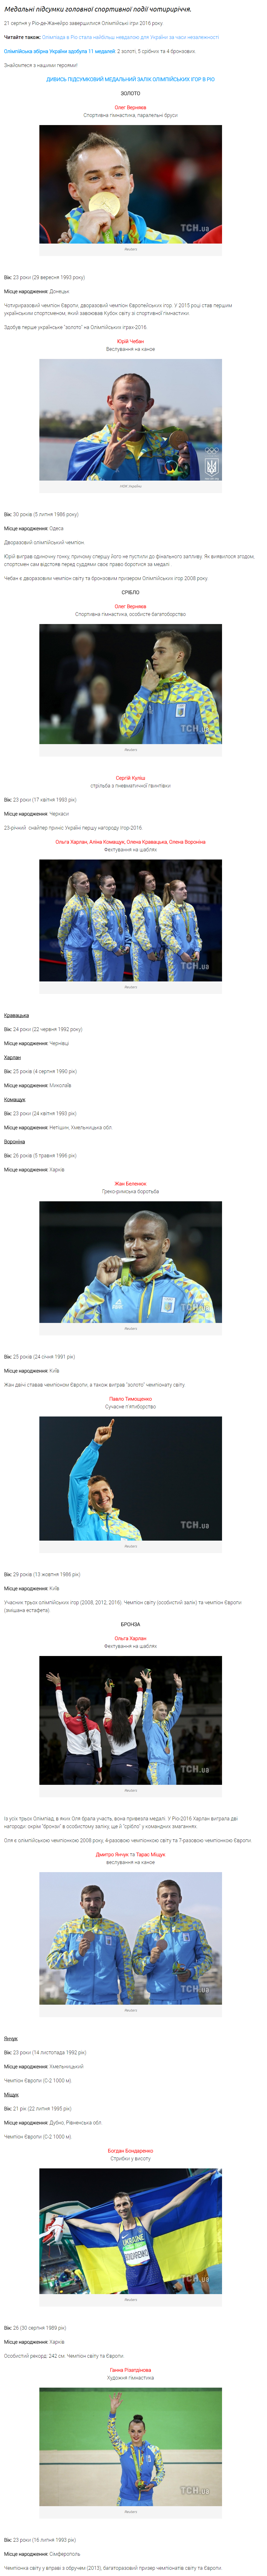 http://prosport.tsn.ua/sport/medalisti-olimpiyskih-igor-v-rio-hto-proslaviv-ukrayinu-731465.html